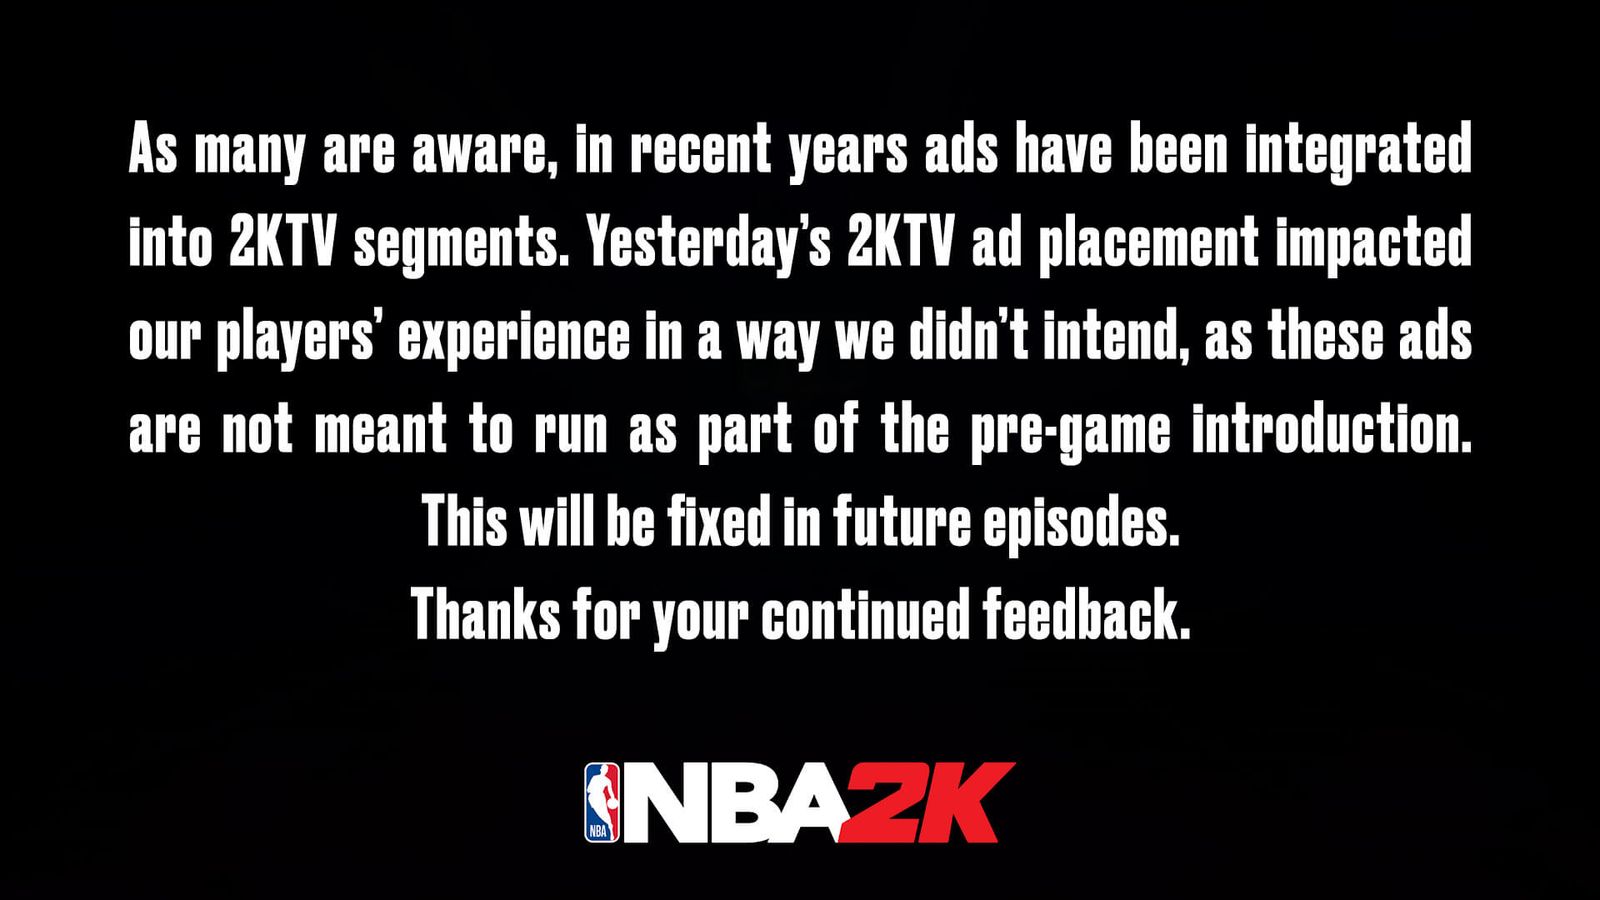 NBA 2K21 unskippable ads 2Ktv 1